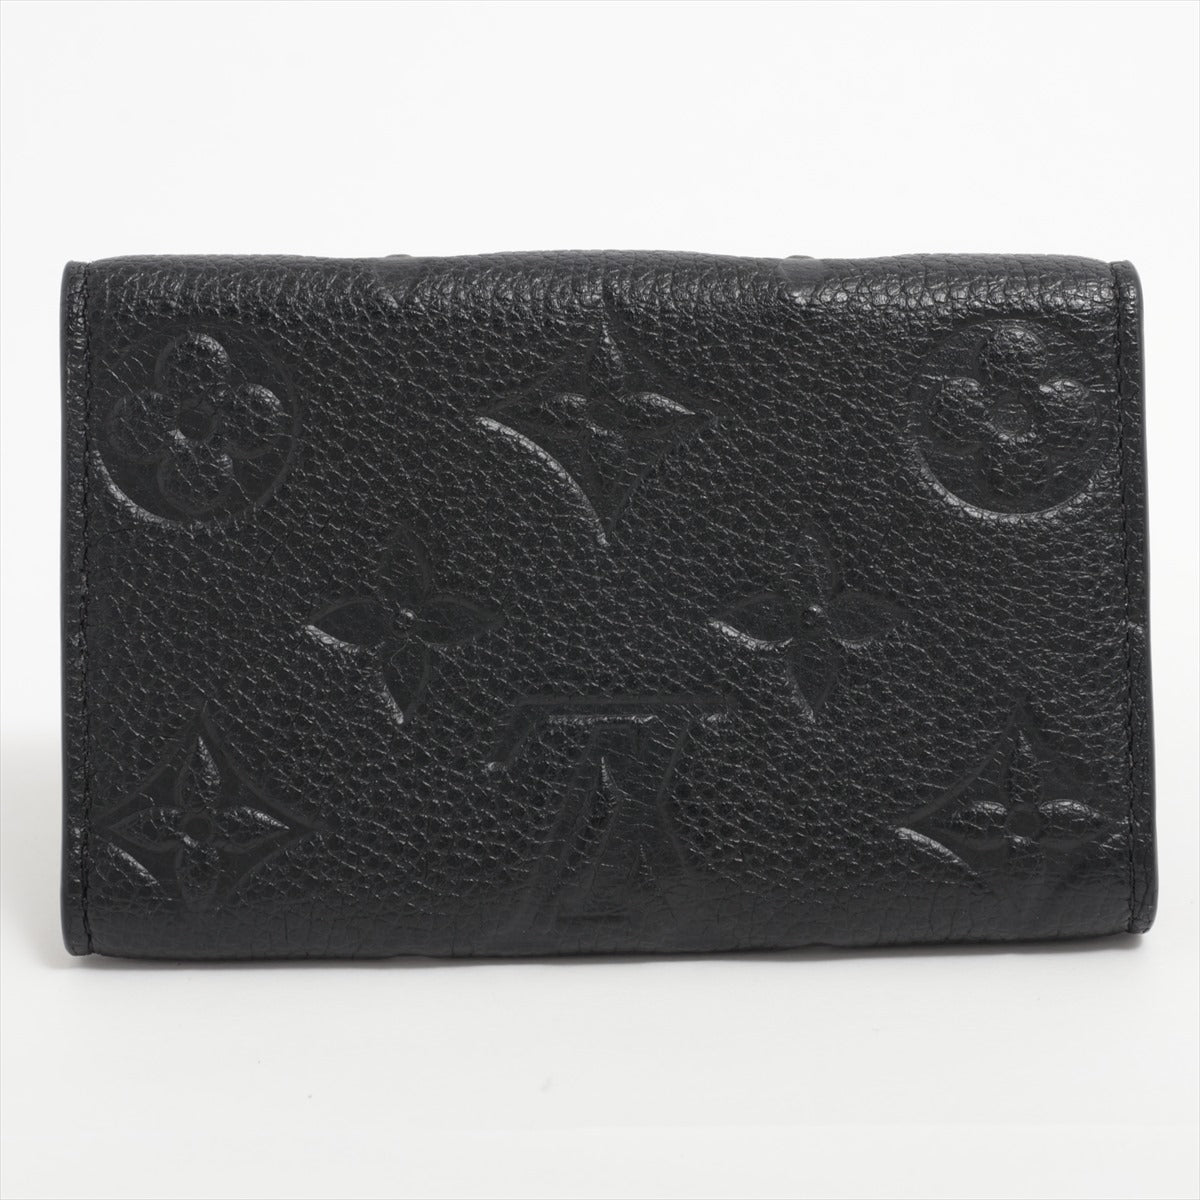 Louis Vuitton monogram empreinte Multiclés 6 M64421 Noir Key case responsive RFID